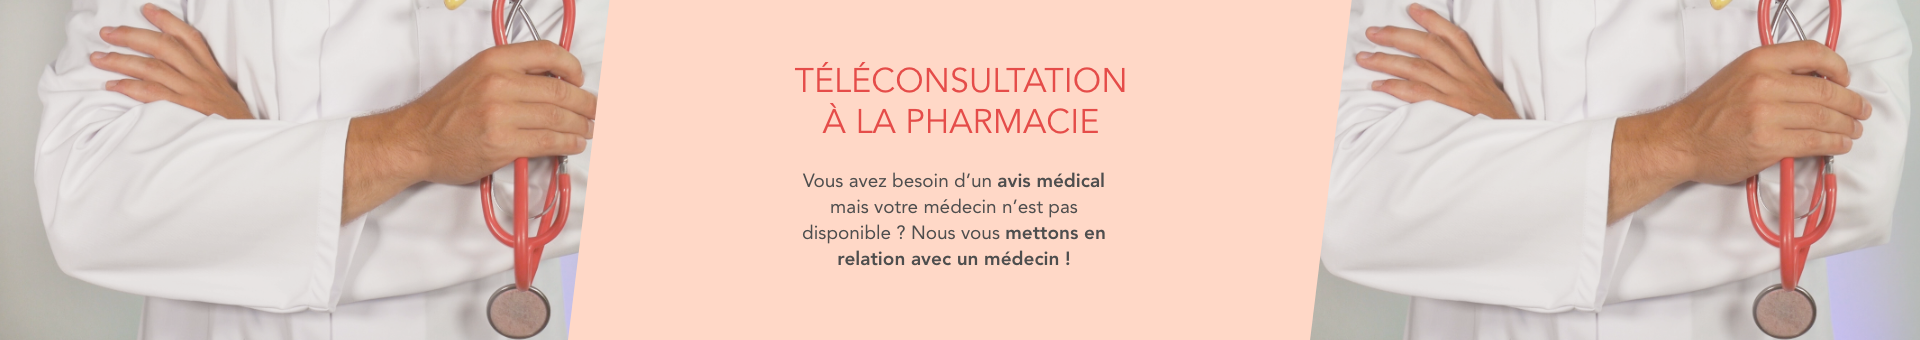 Pharmacie Bertrand - Casse,Lédignan